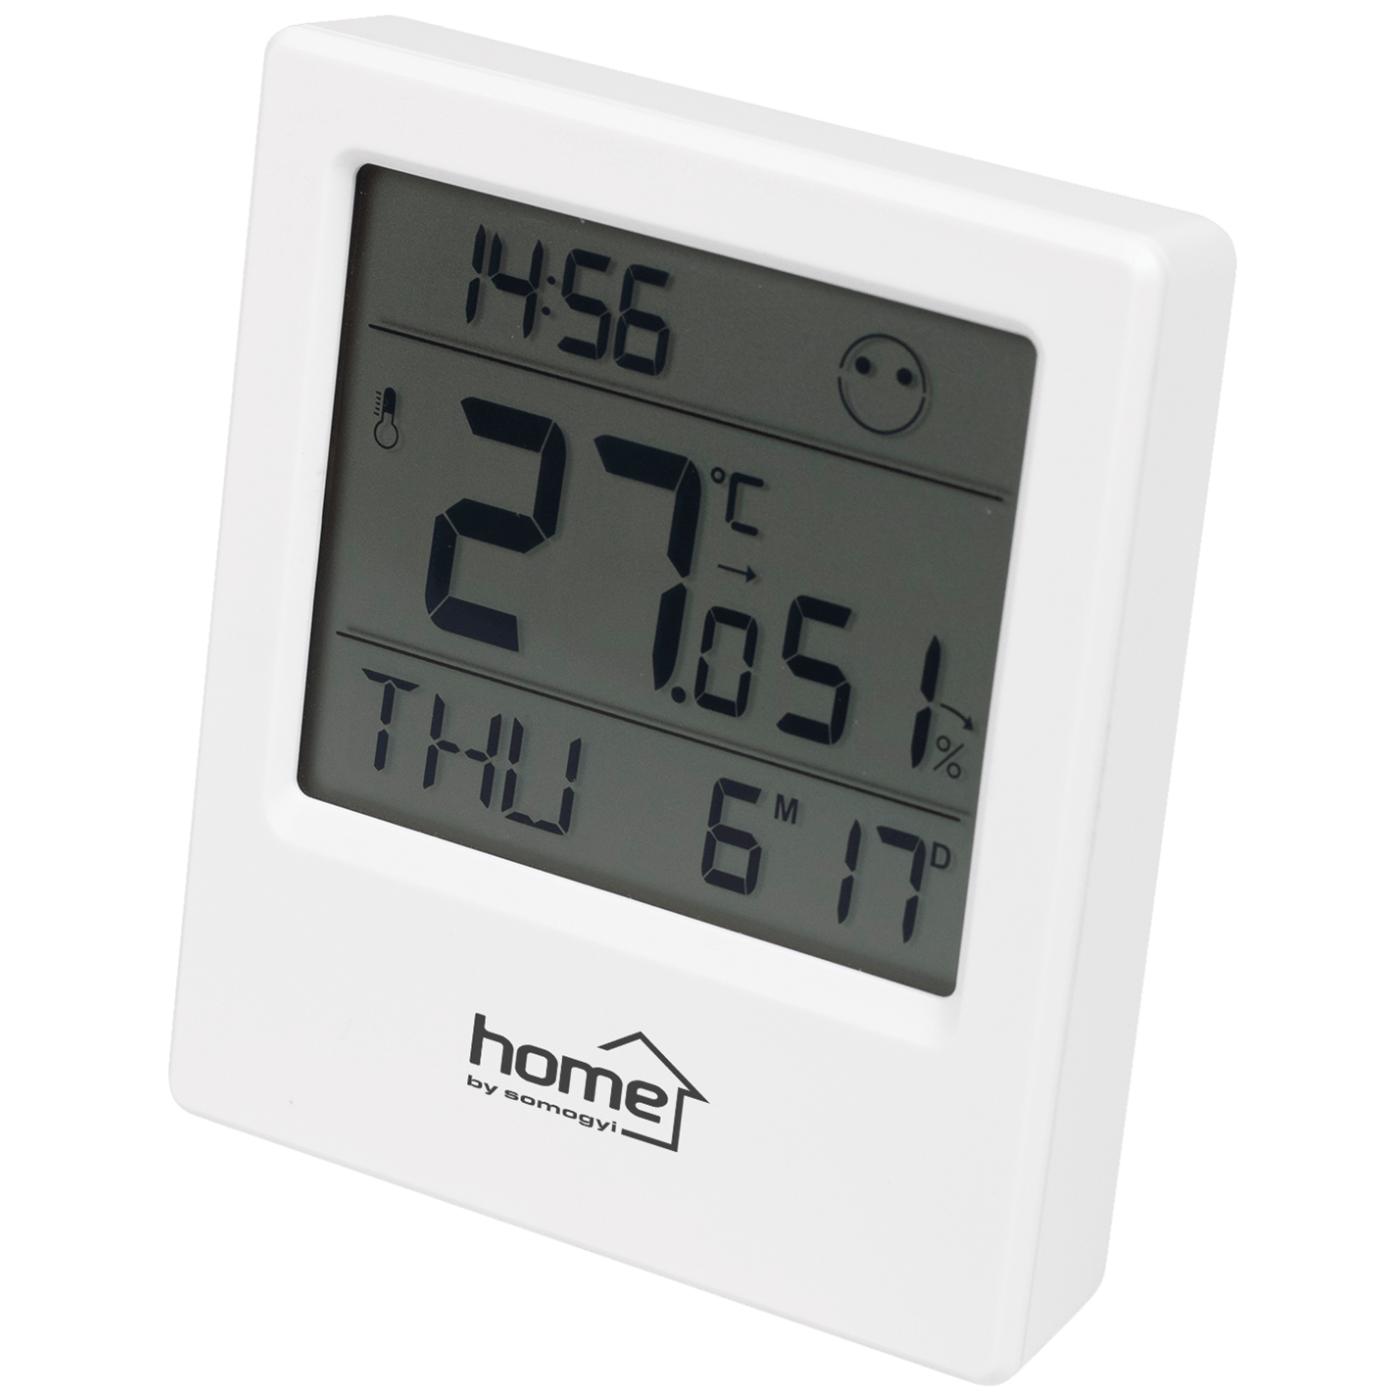 Termometar sa mjerenjem vlažnosti zraka, digitalni